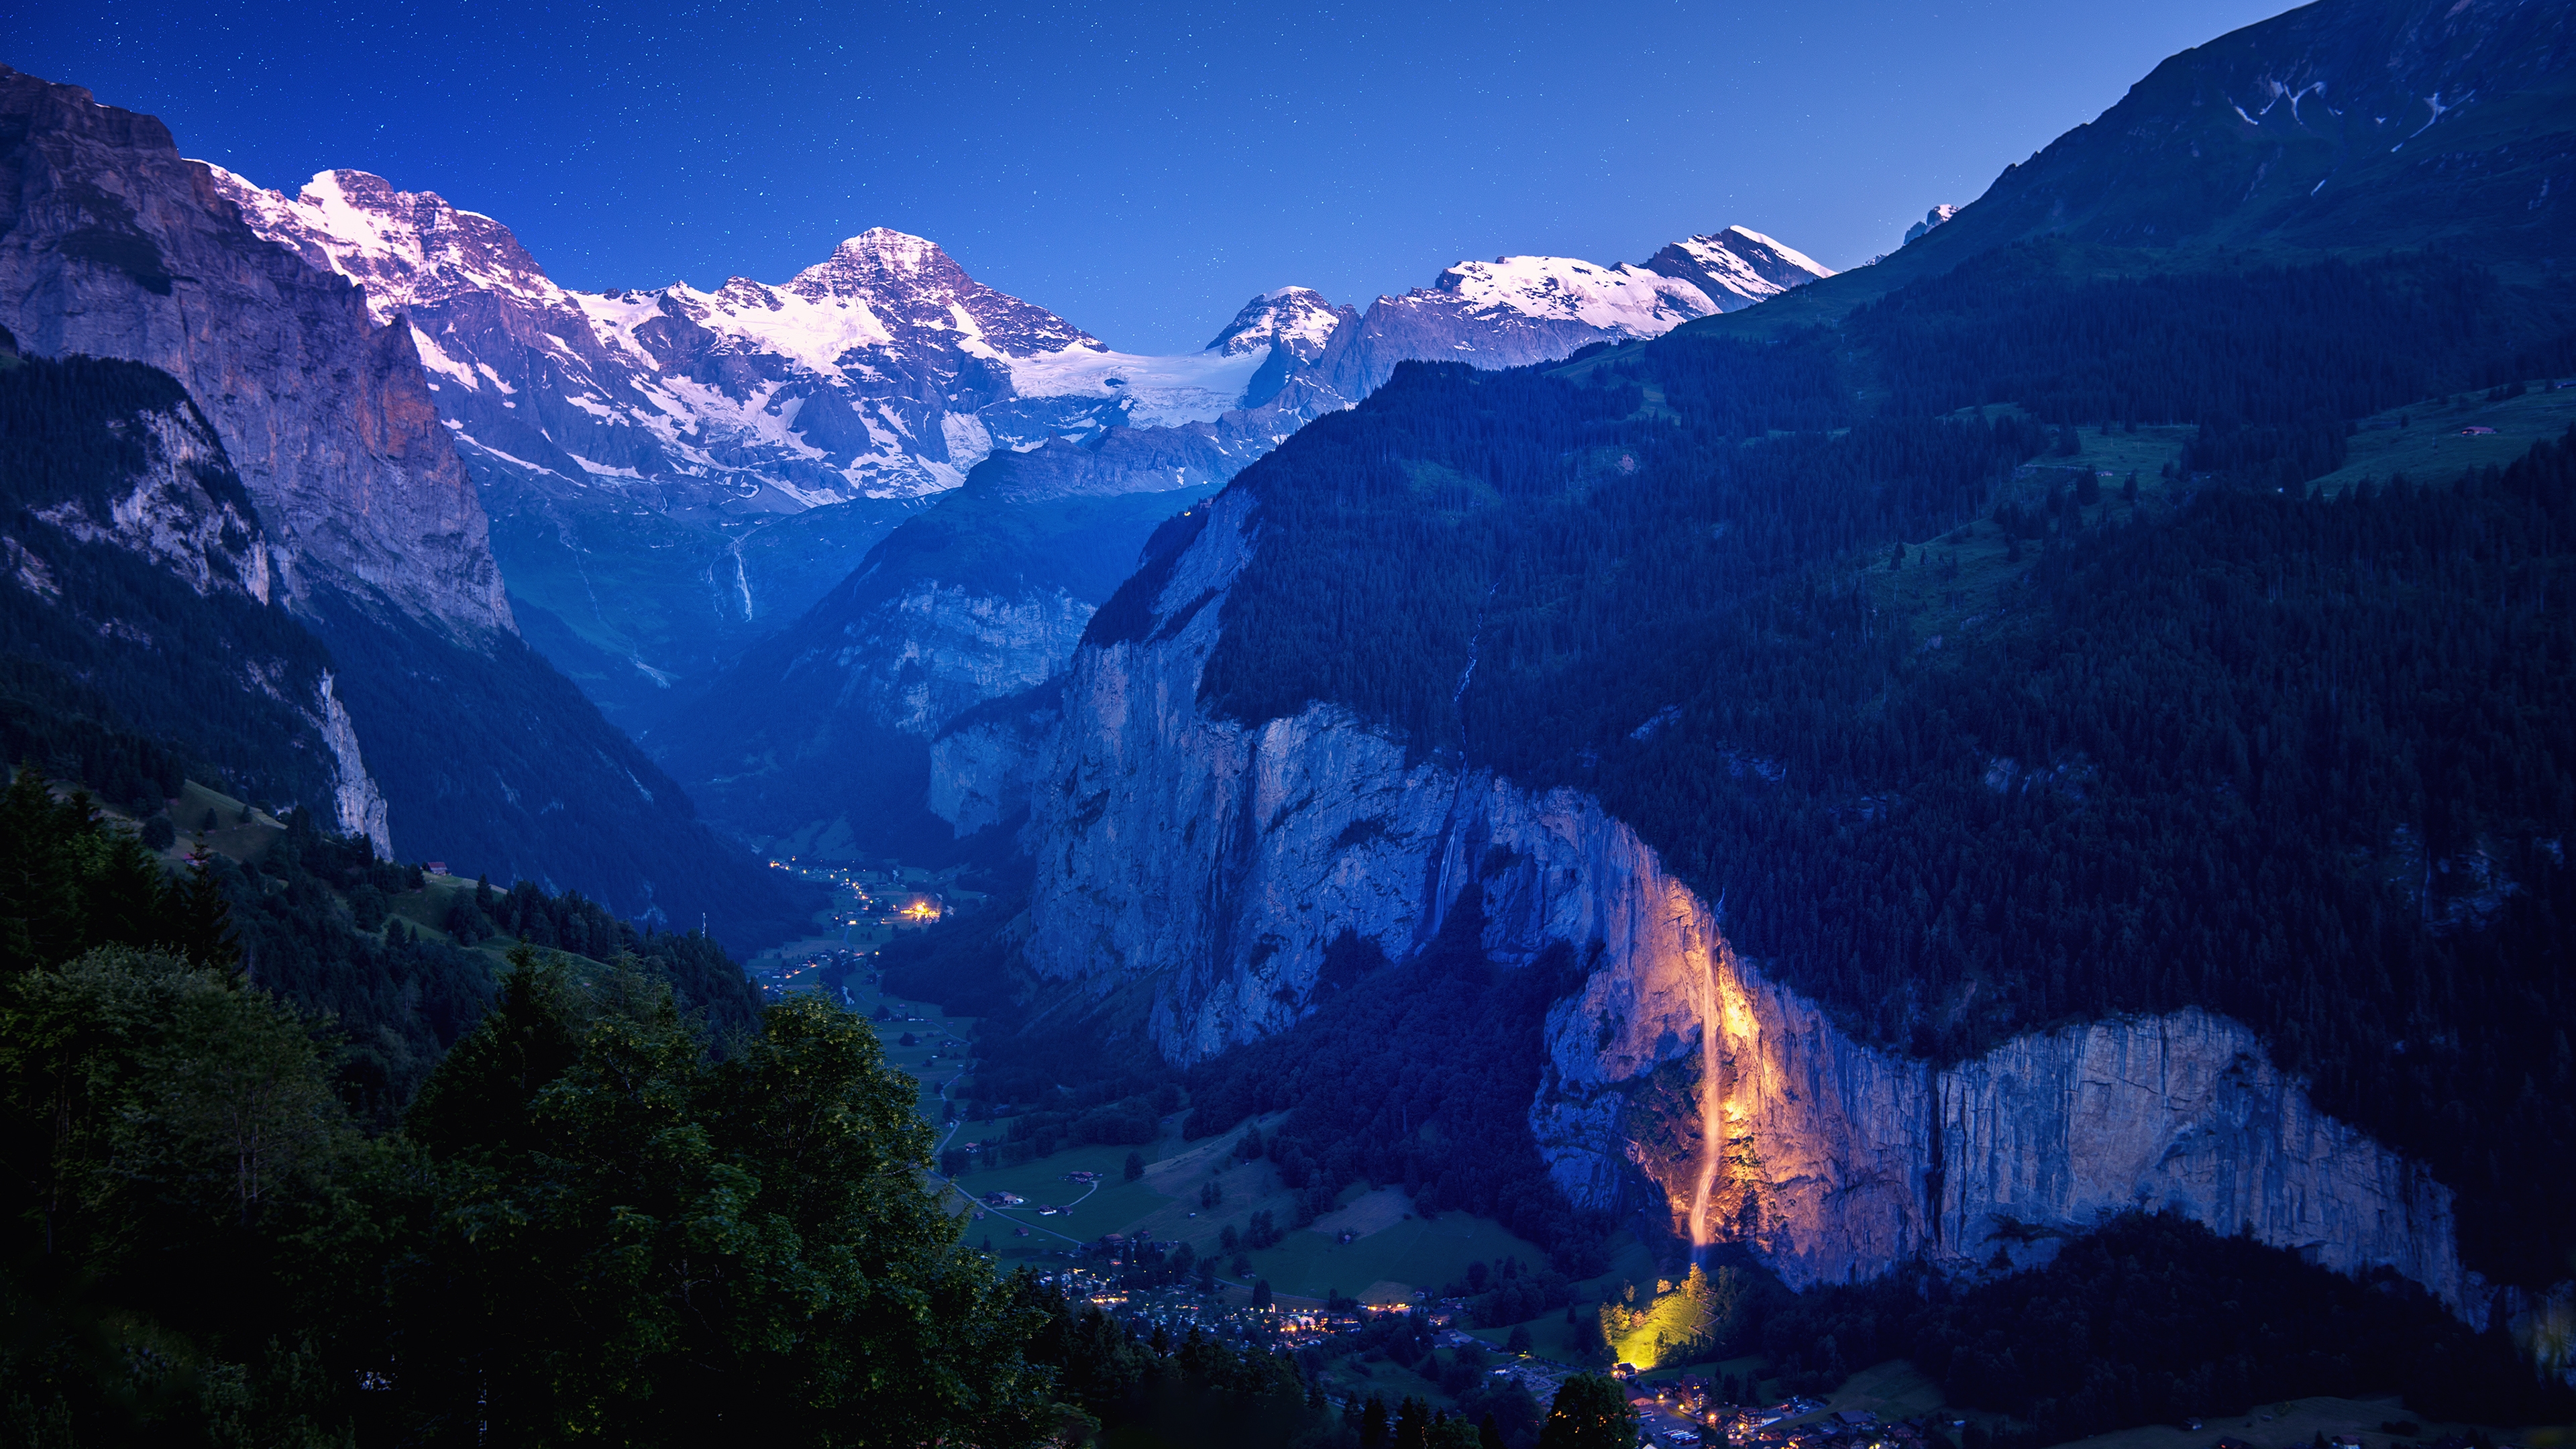 Lauterbrunnen Valley for 3840 x 2160 Ultra HD resolution